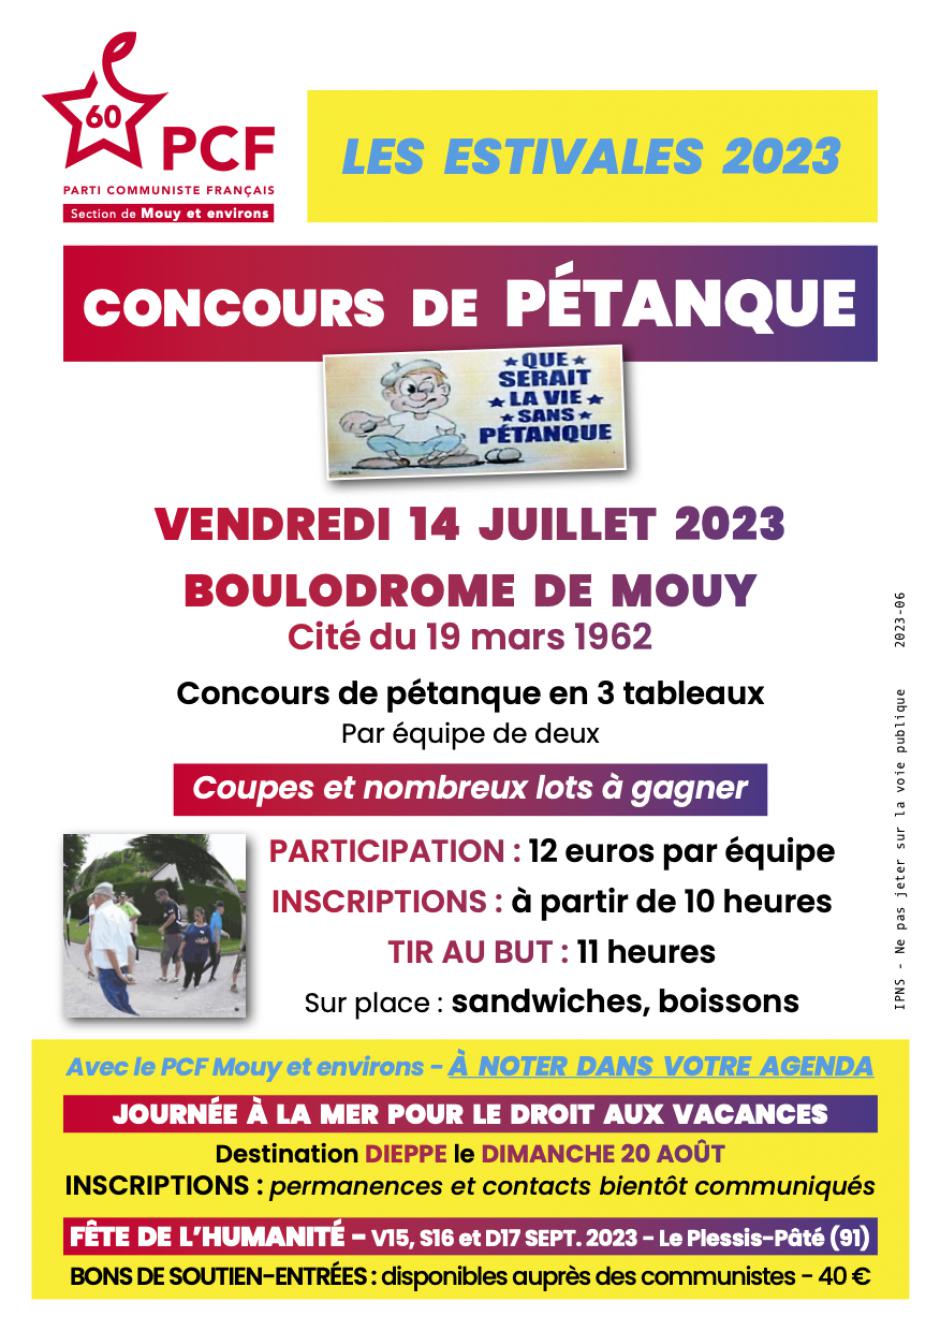 Flyer « Concours de pétanque à Mouy »-2e version - PCF Mouy, 14 juillet 2023